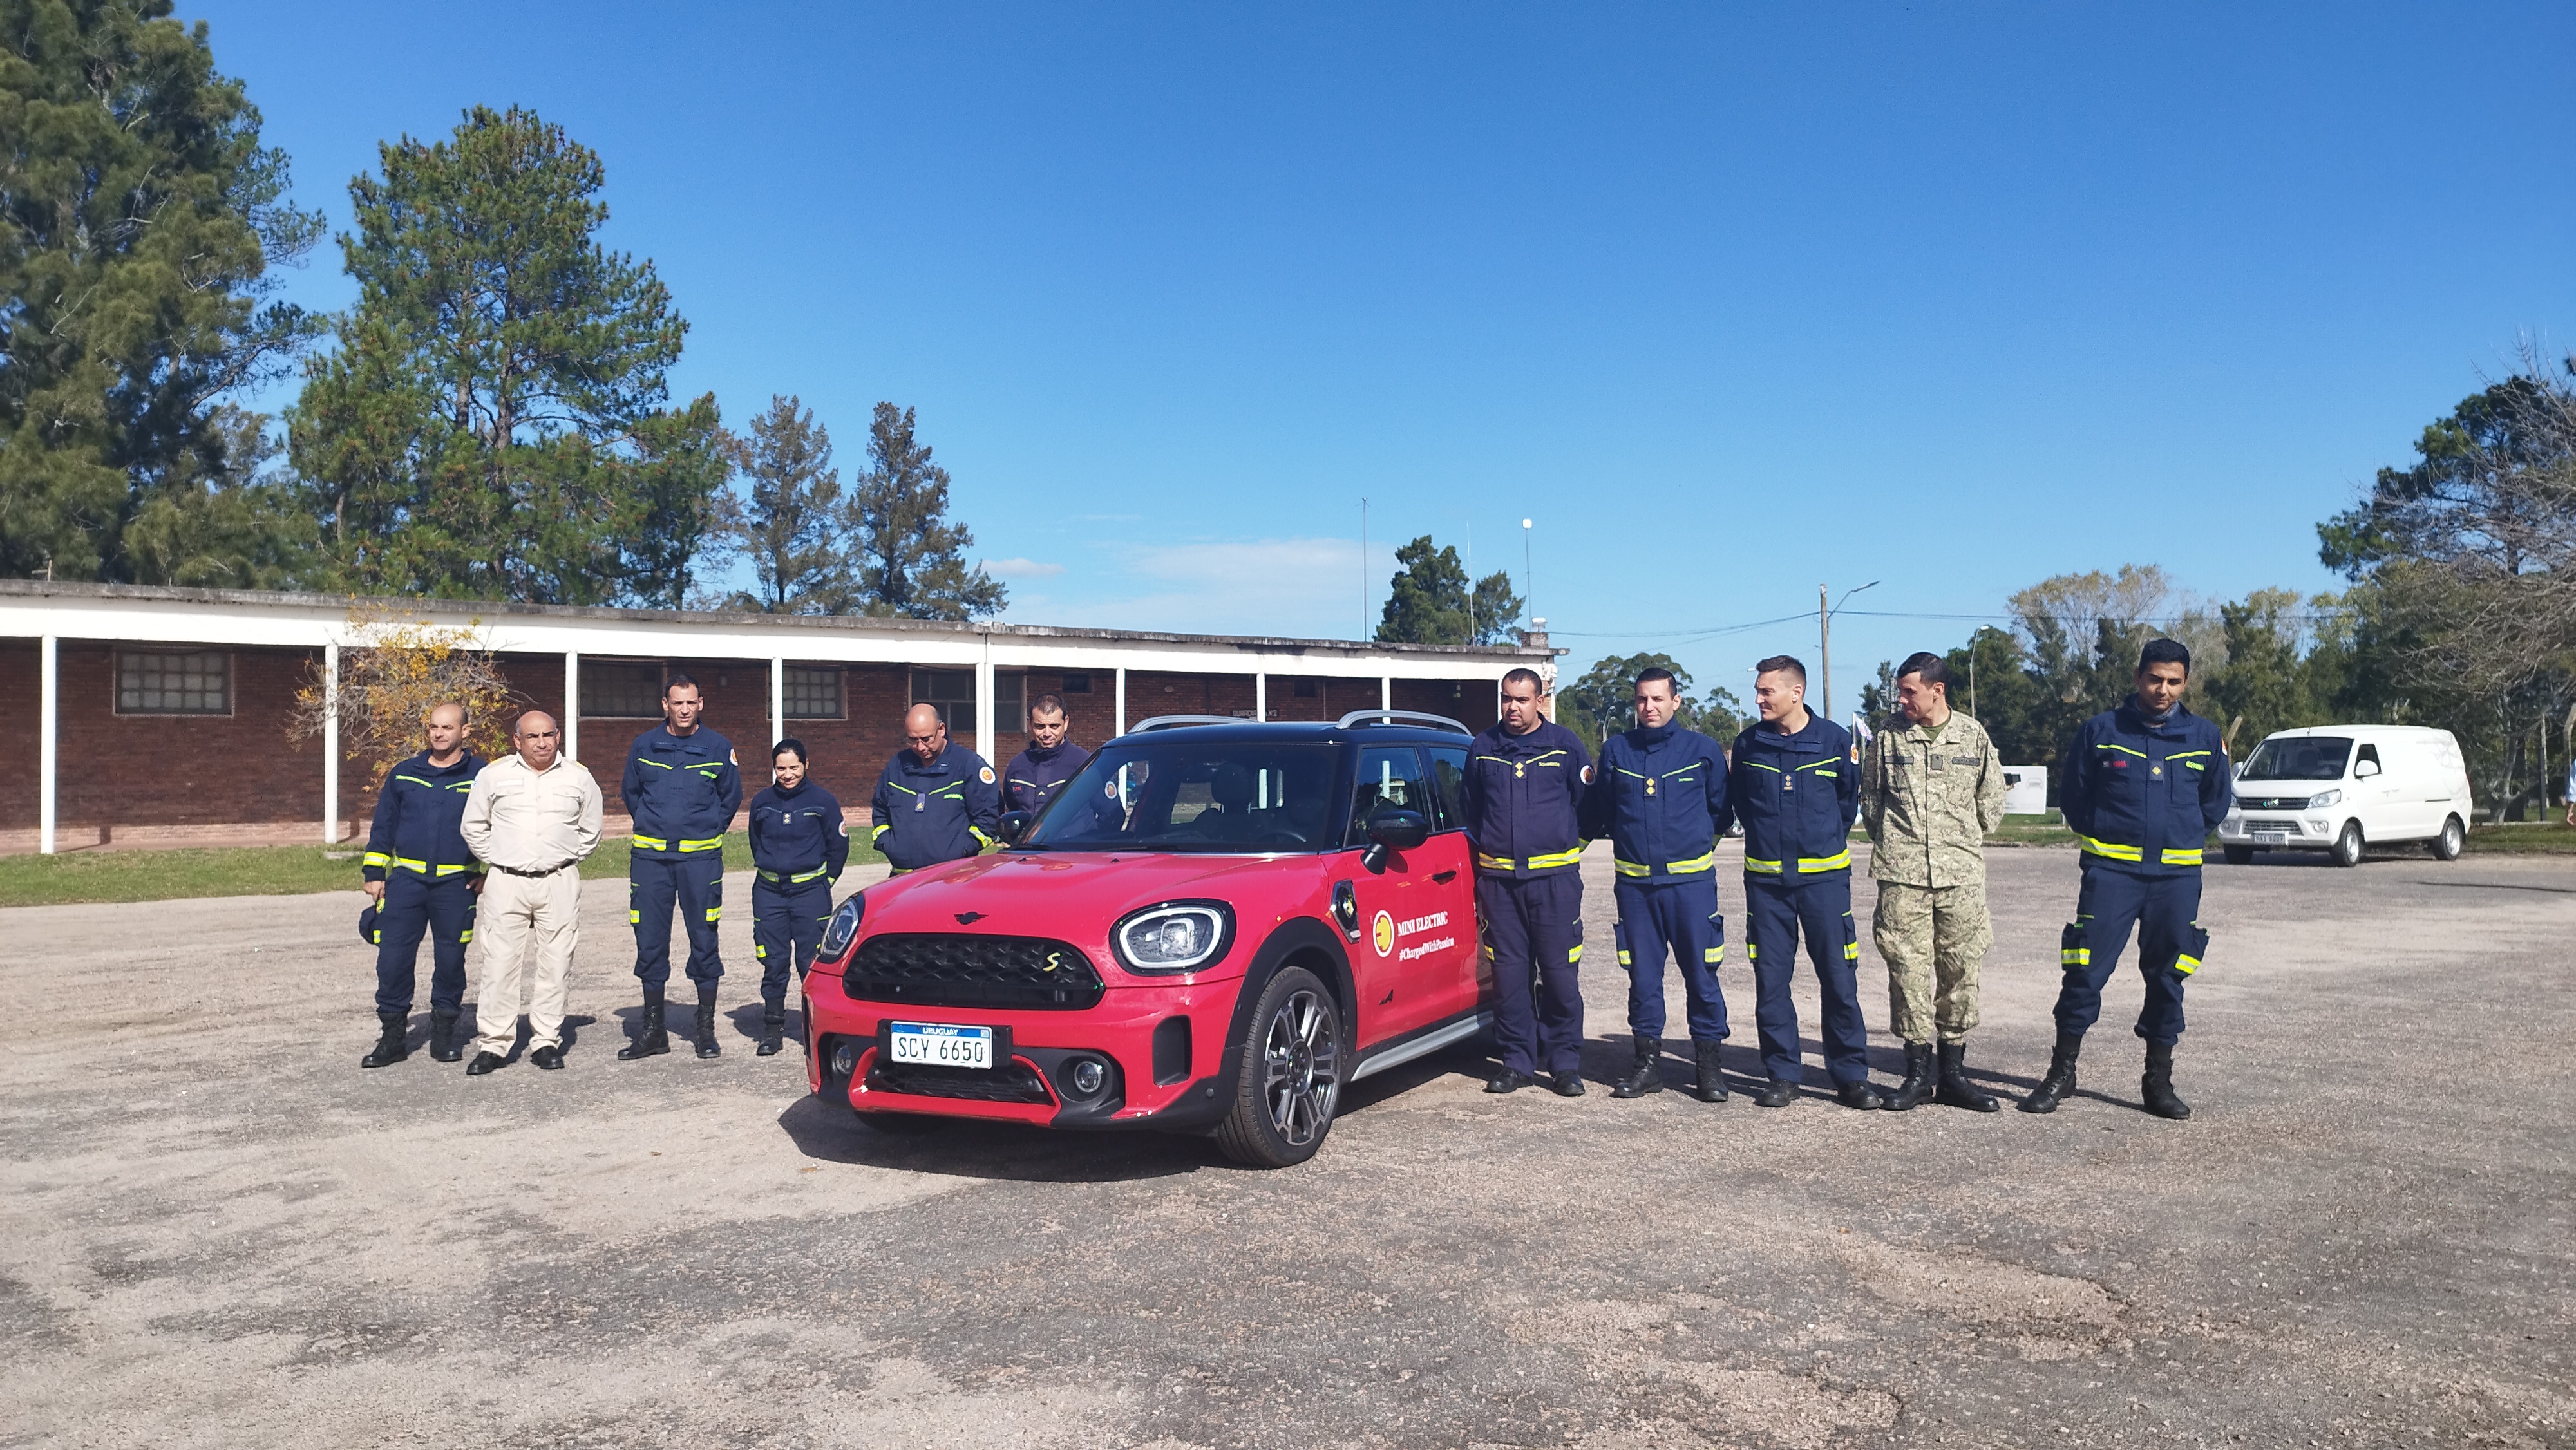 IMG_20230511_133639.jpg - El pasado jueves 11 de mayo culminó la &#034;Capacitación para bomberos sobre manejo de incidentes relacionados con la movilidad eléctrica&#034; en donde se capacitaron a 25 bomberos en la Base Aérea de Santa Bernardina del departamento de Durazno. Esta capacitación es la continuación del primer curso regional que organizó la plataforma MOVE del Programa de la Naciones Unidas para el Medio Ambiente a finales de 2022 en Paraguay, donde participaron y se formaron dos bomberos instructores de Uruguay.